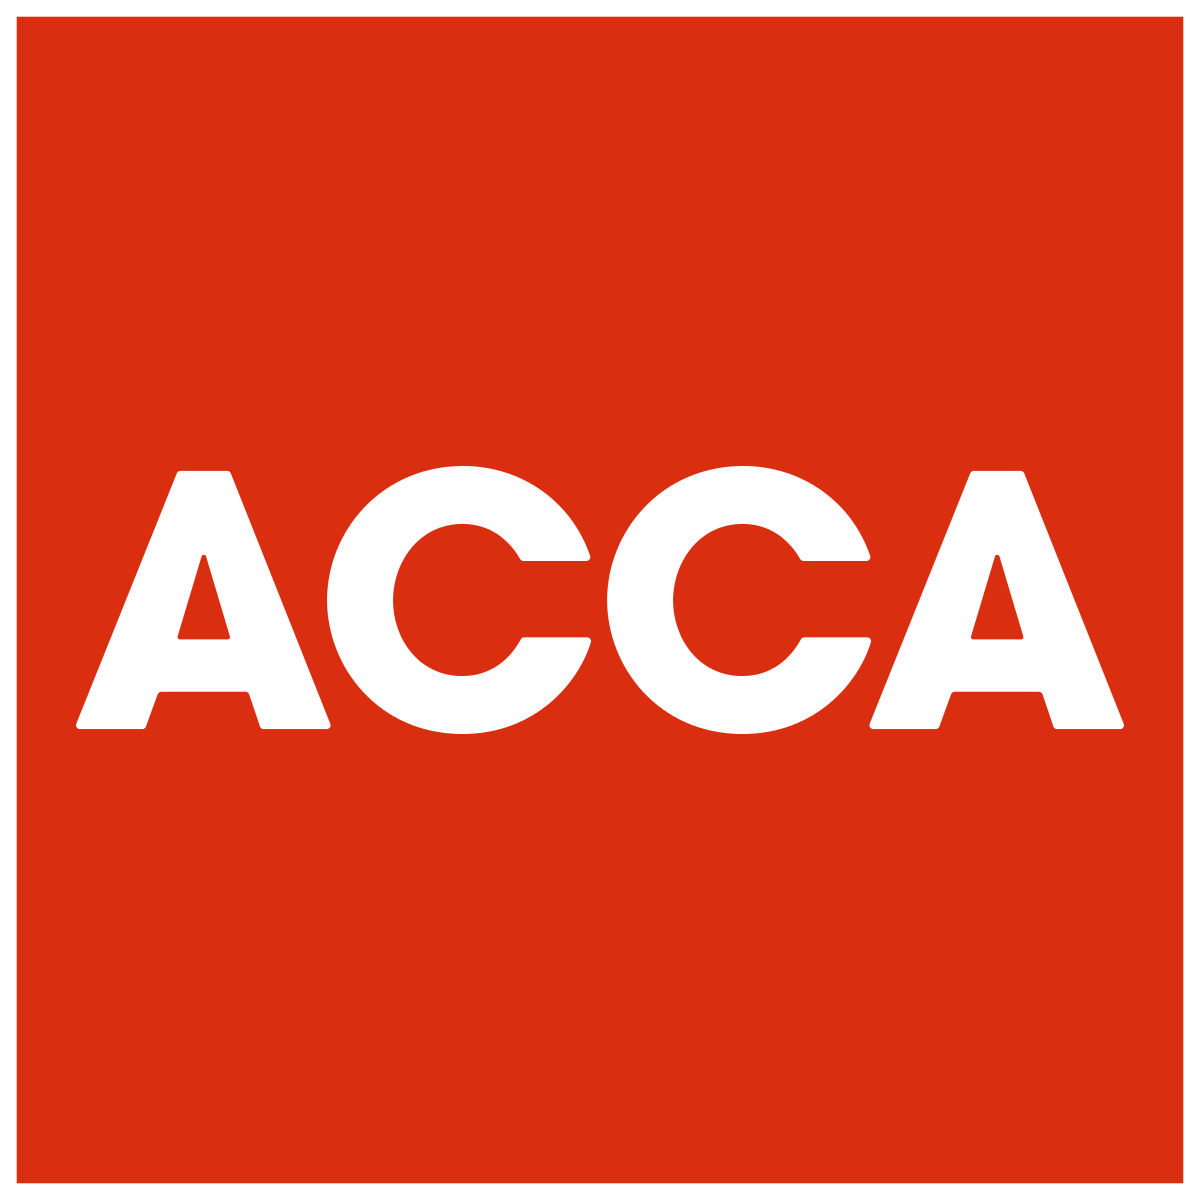 ACCA(英国勅許公認会計士)という資格